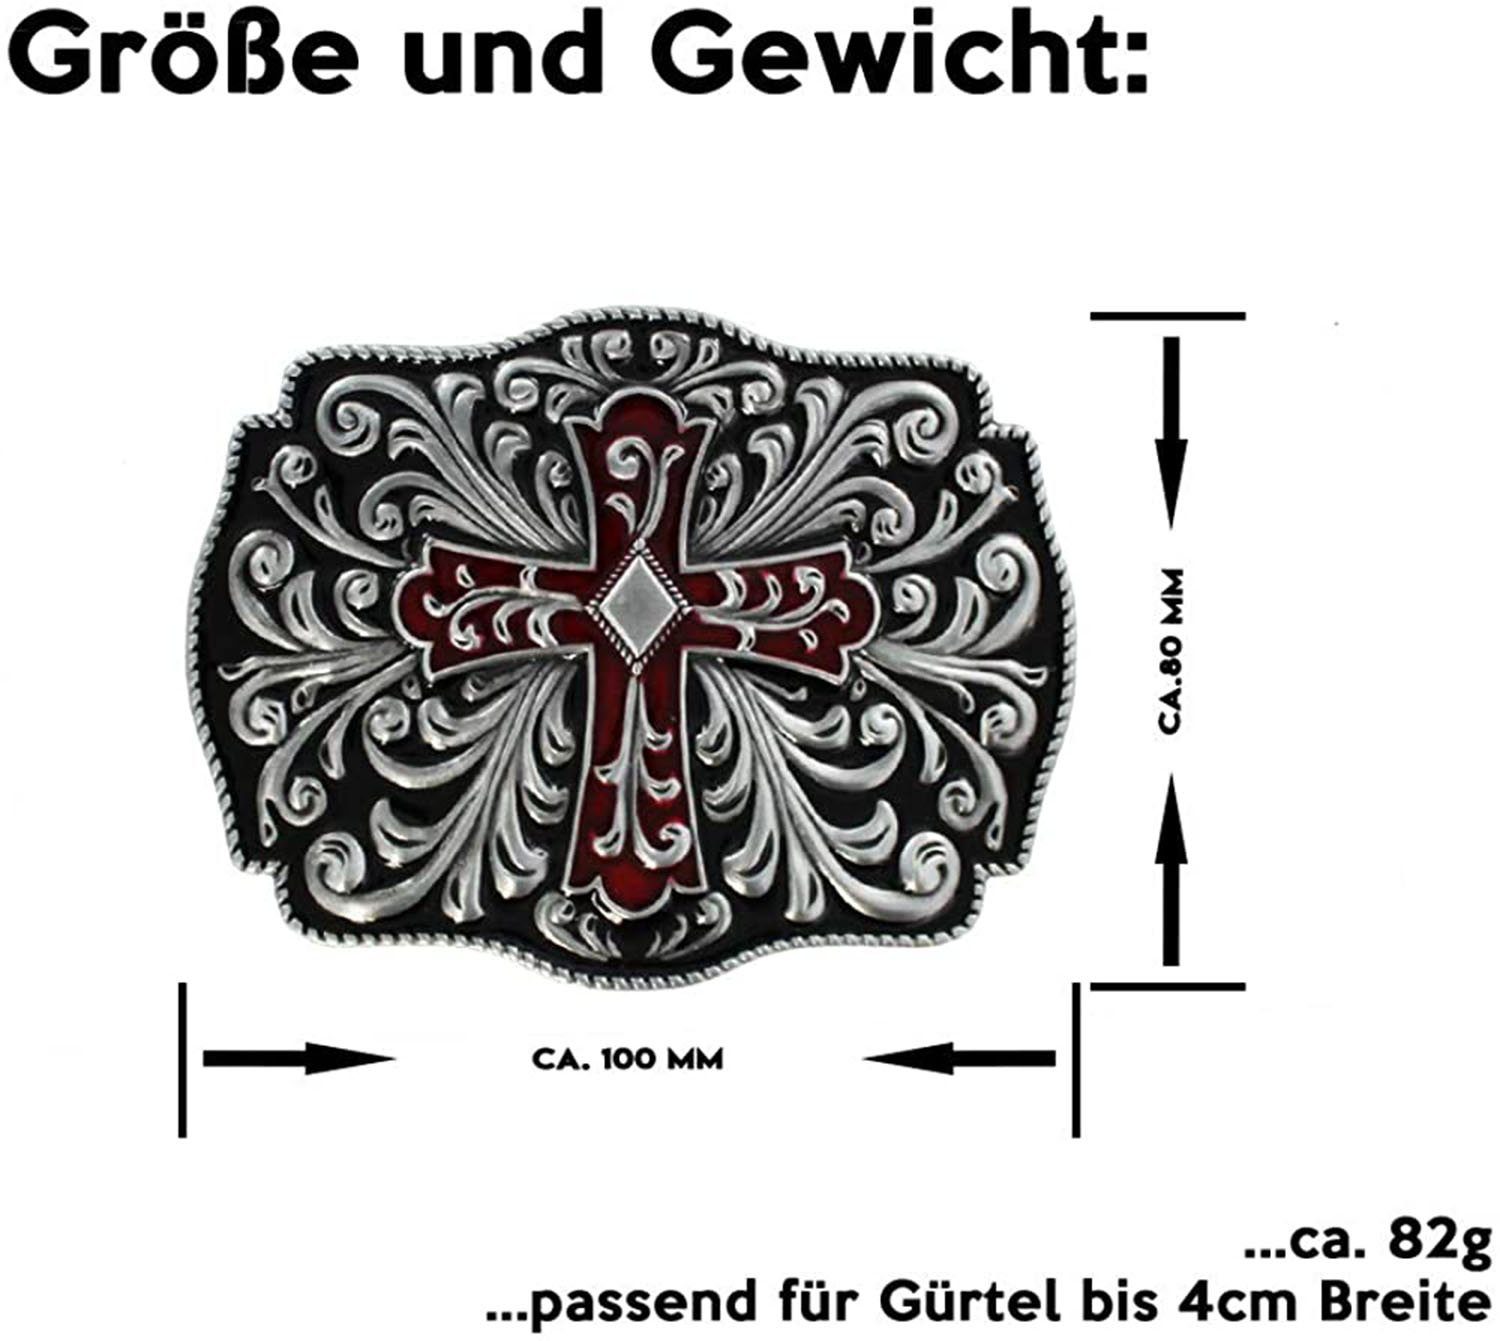 Herren Gürtelschnallen Housruse Gürtelschnalle Buckle - Antique cross red/black decorated Denim-Gürtelschnalle für Herren